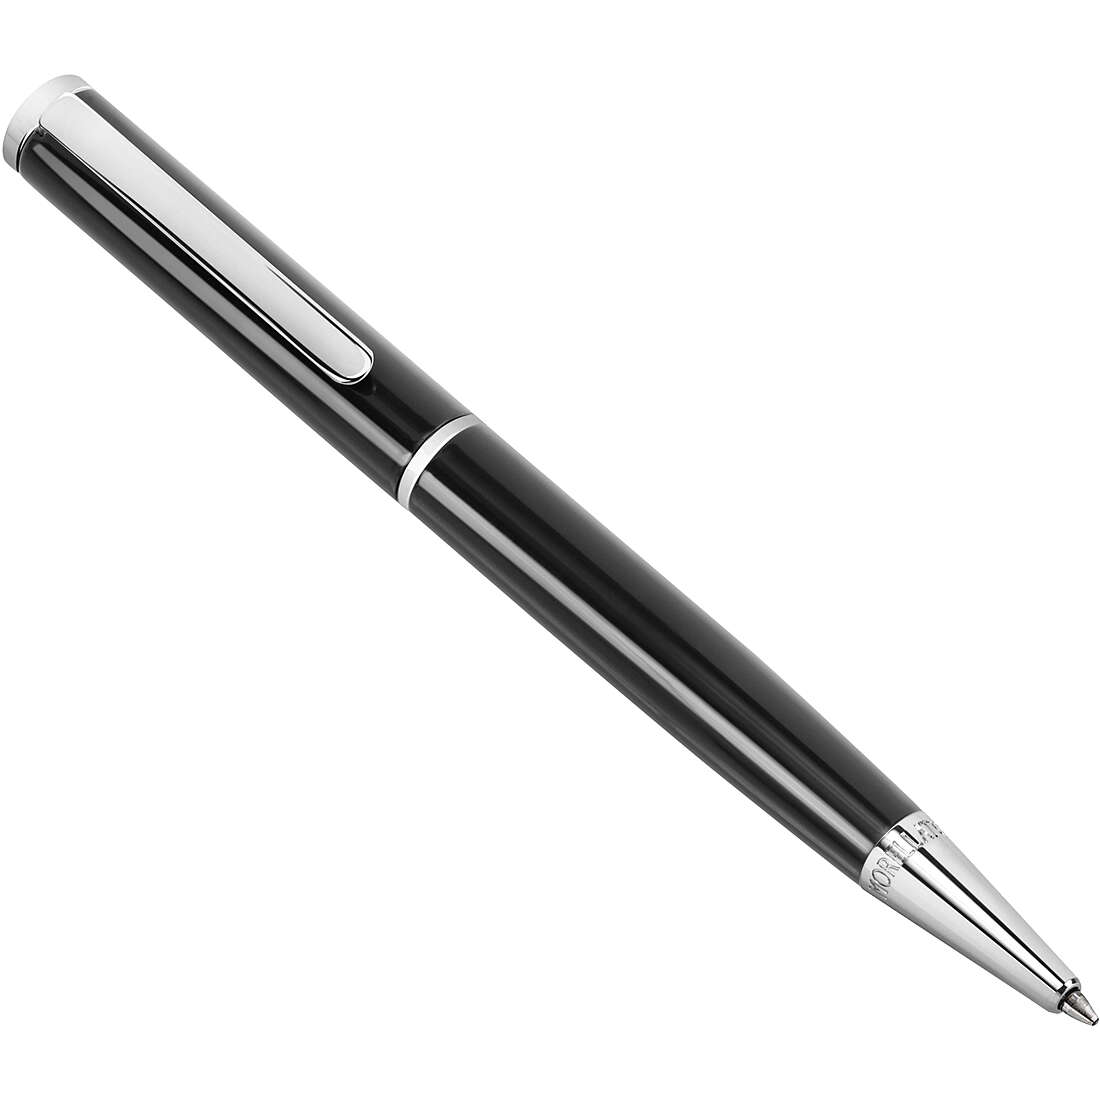 Individualisierte Stift mit Kugelschreiber von Morellato aus der Design J010701